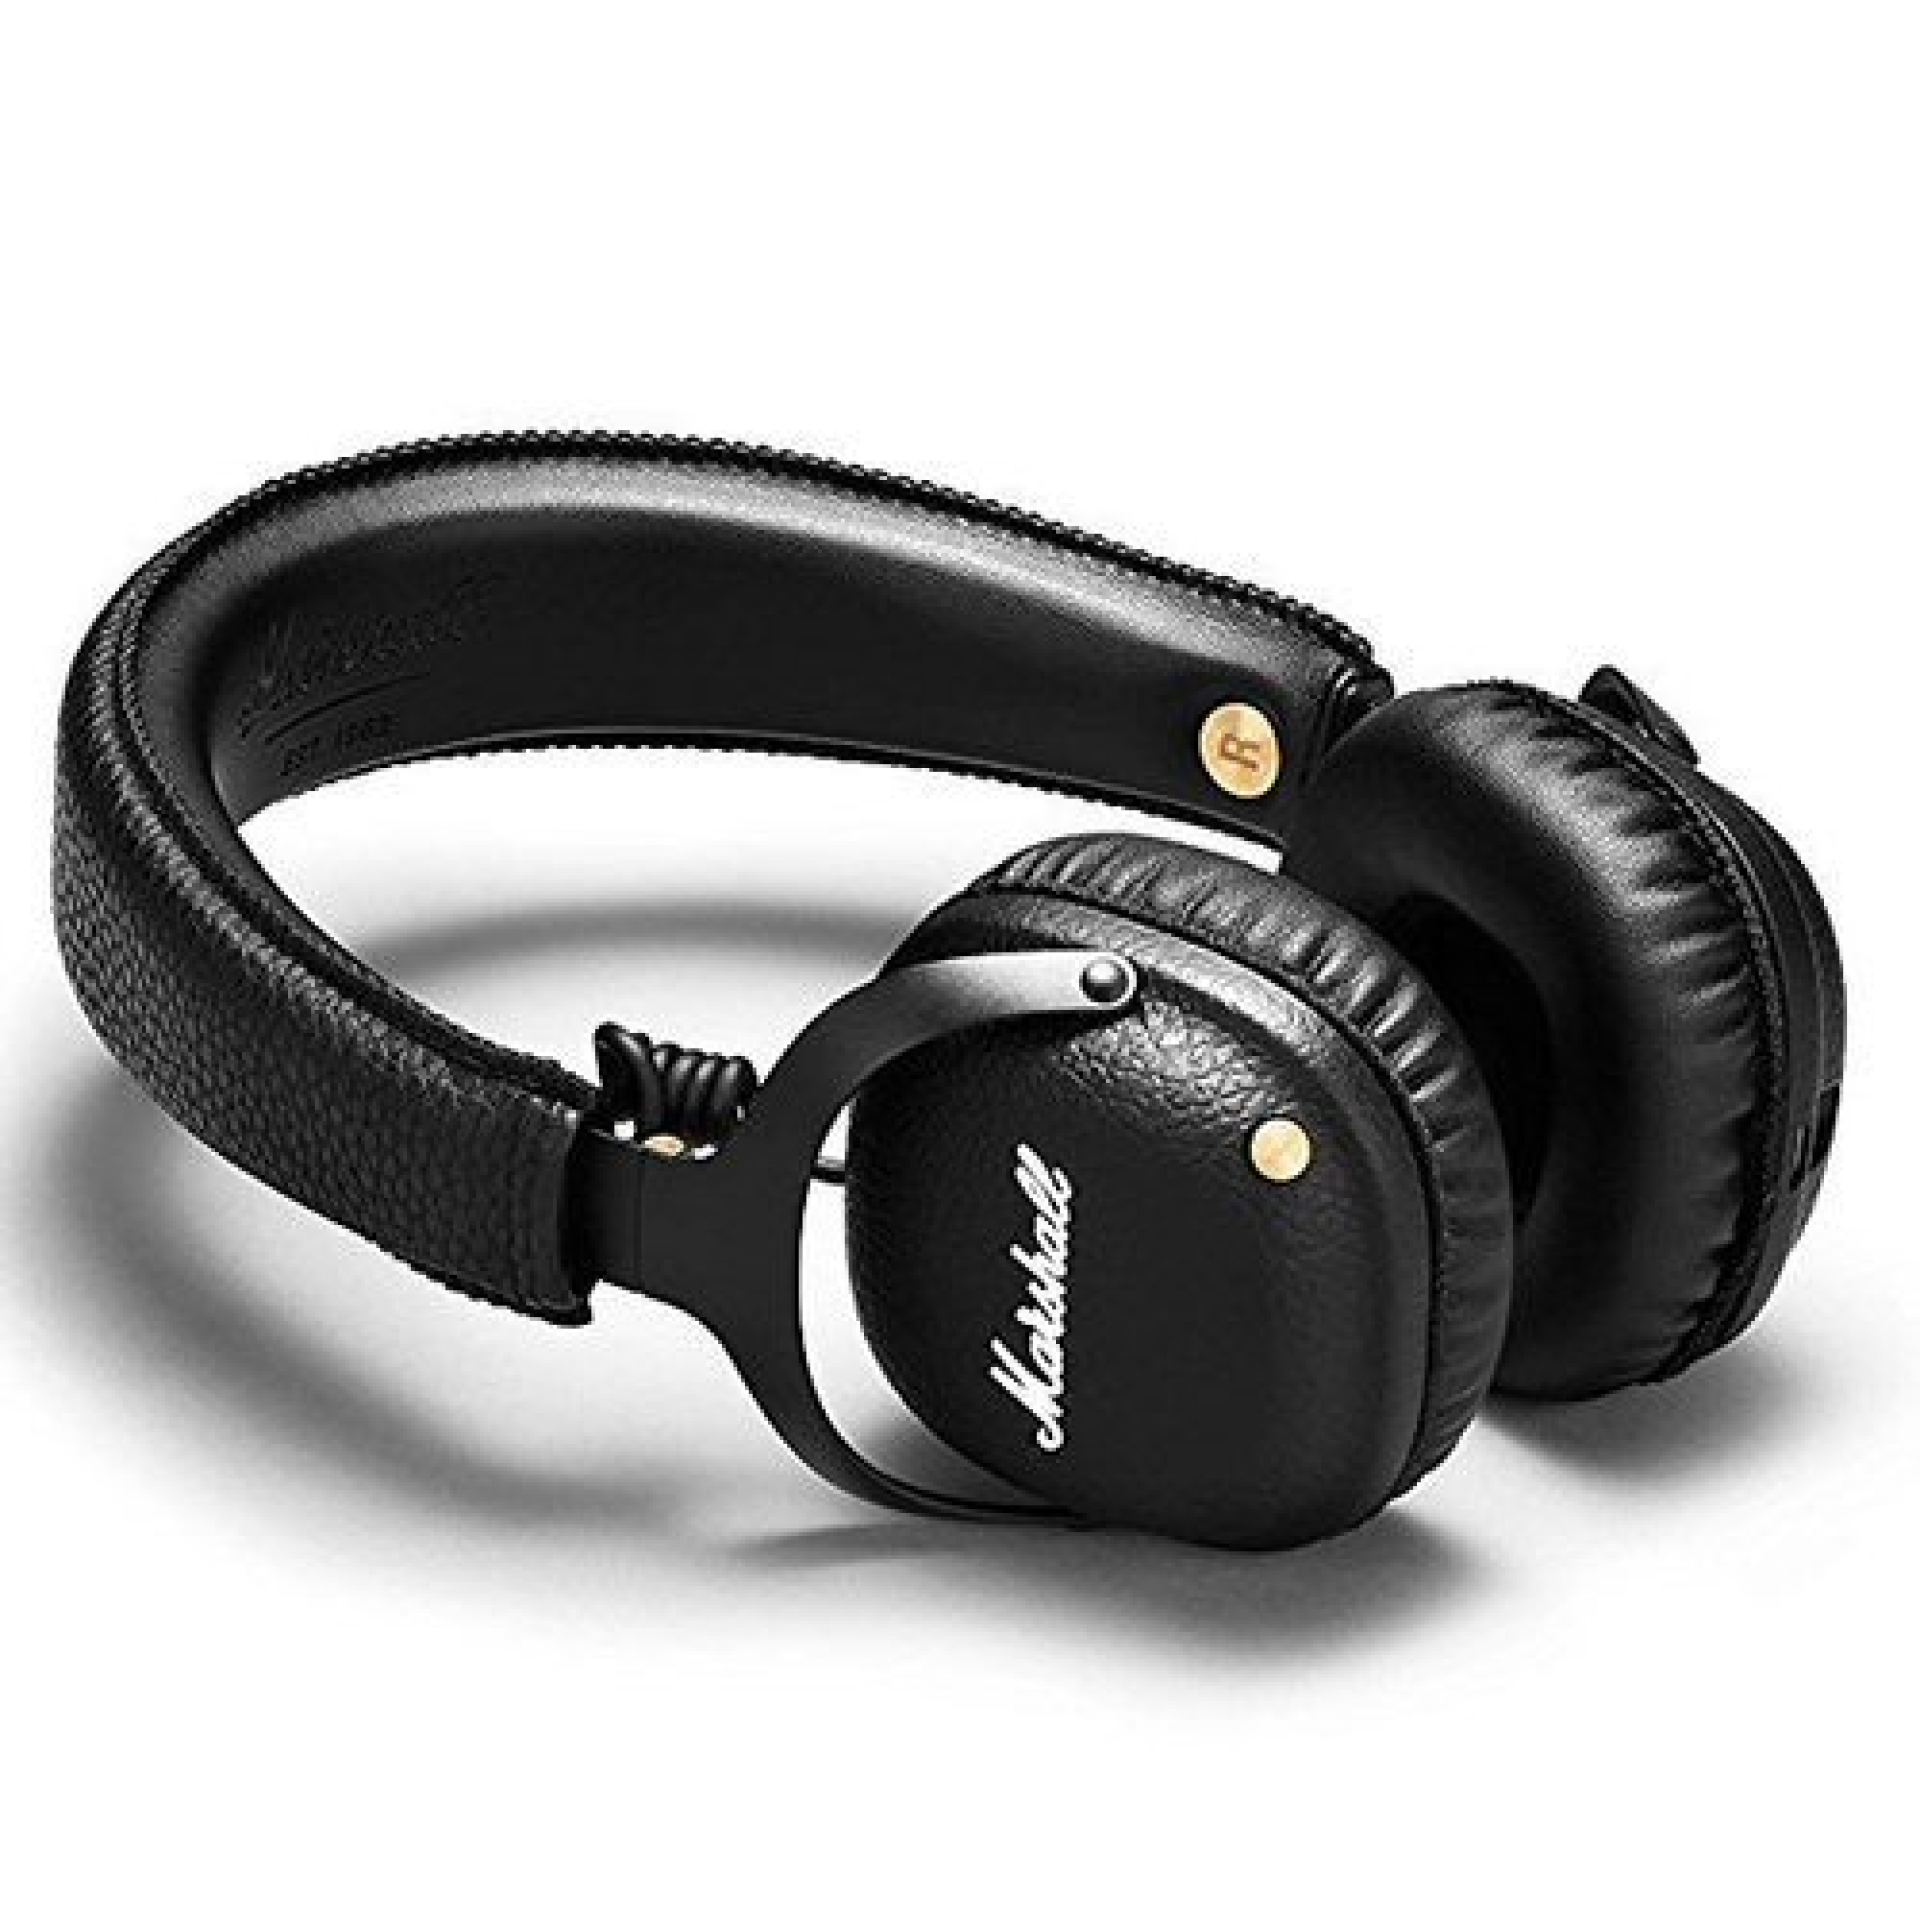 אוזניות Marshall Mid Bluetooth בצבע שחור - סמארט טיים